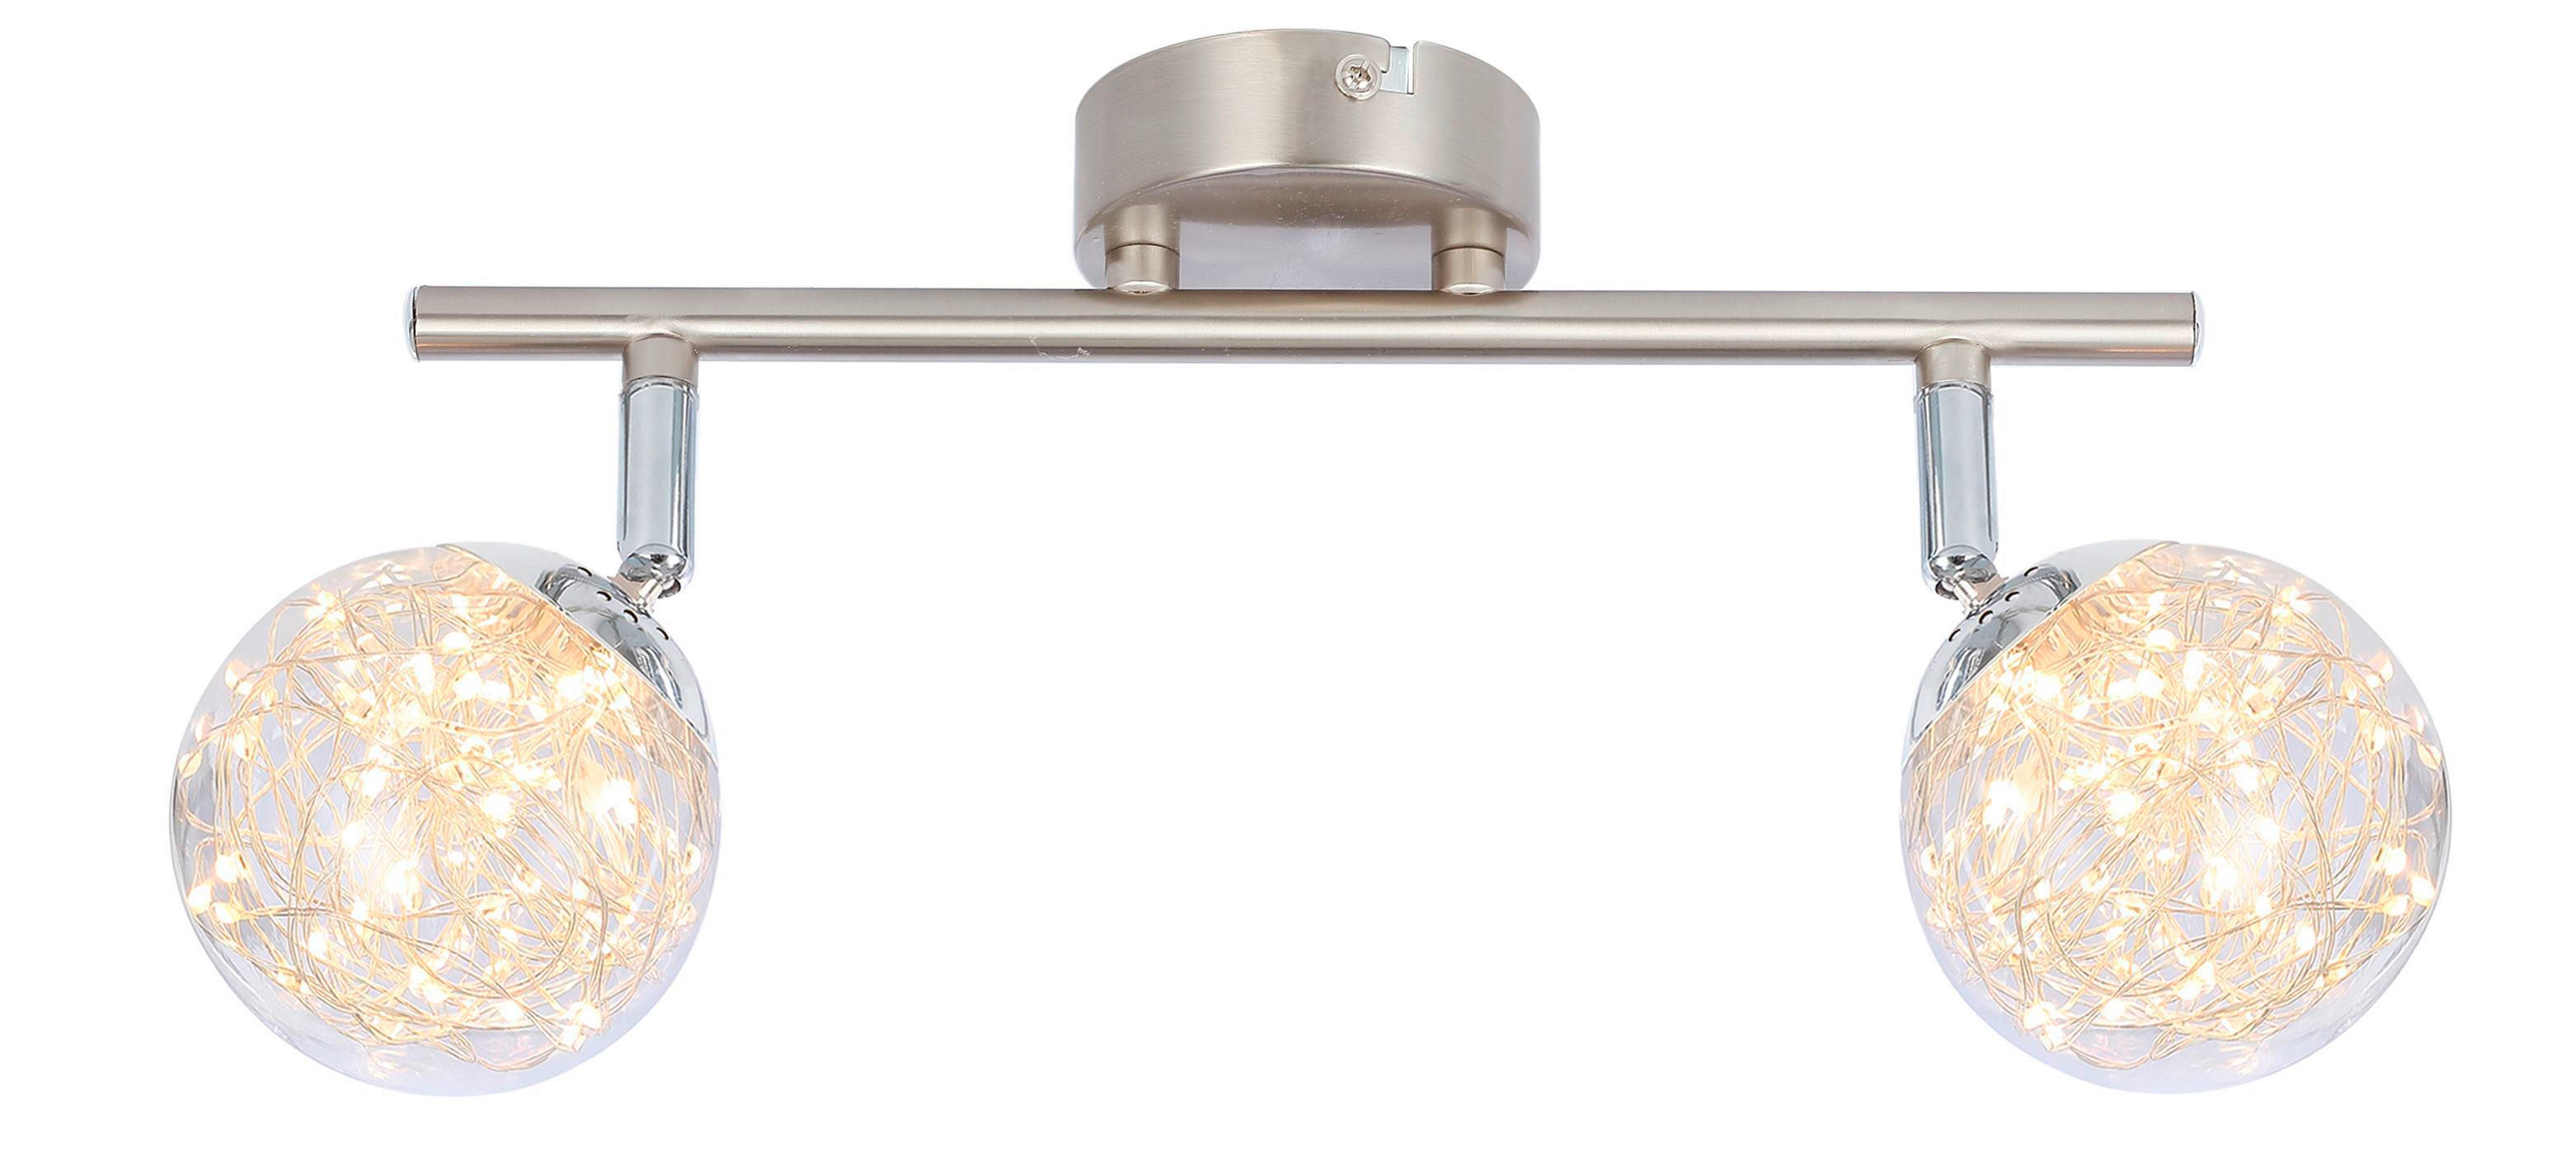 LED-STRAHLER 30/10/19,5 cm   - Klar, Design, Glas/Metall (30/10/19,5cm) - Globo